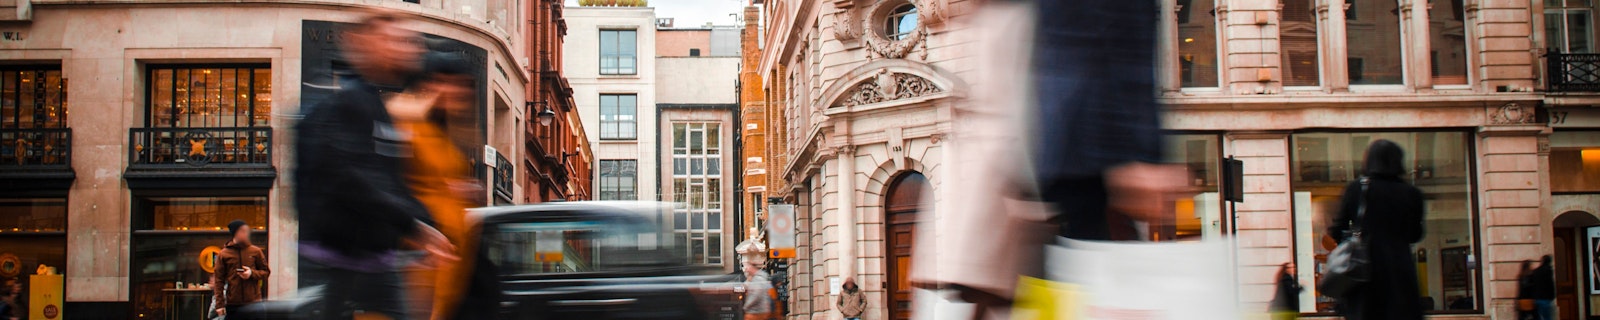 People walking along a street in London